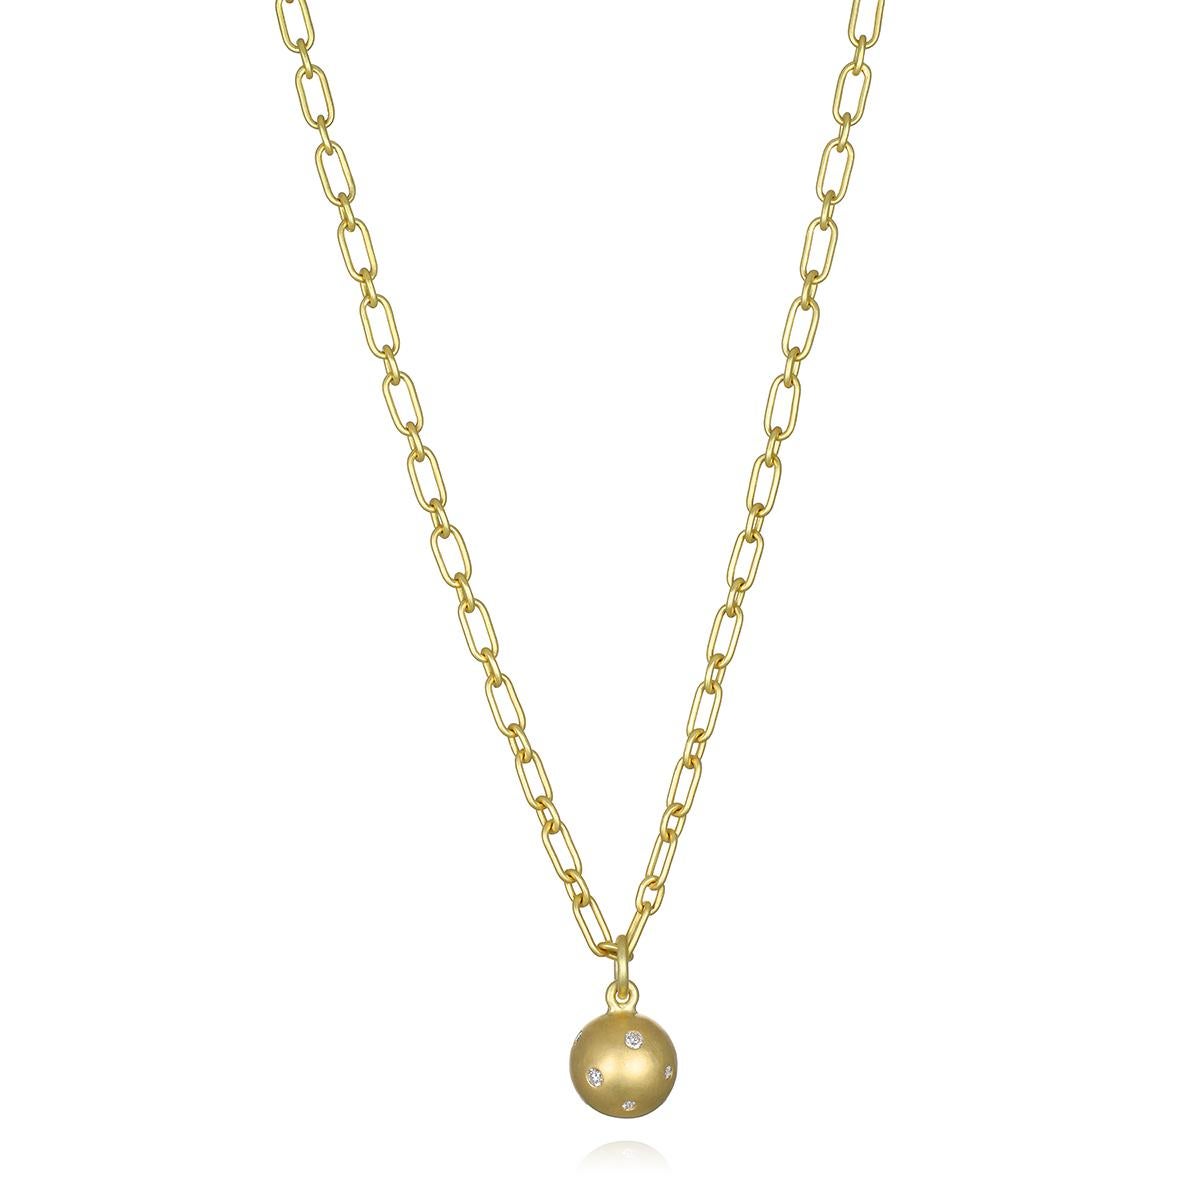 Le charme en or 18 carats Burnished Diamond Ball de Faye Kim, avec sa construction en or massif et sa surface sertie de diamants, offre le poids parfait et juste ce qu'il faut de brillance et d'éclat. Portée seule ou associée à d'autres colliers et